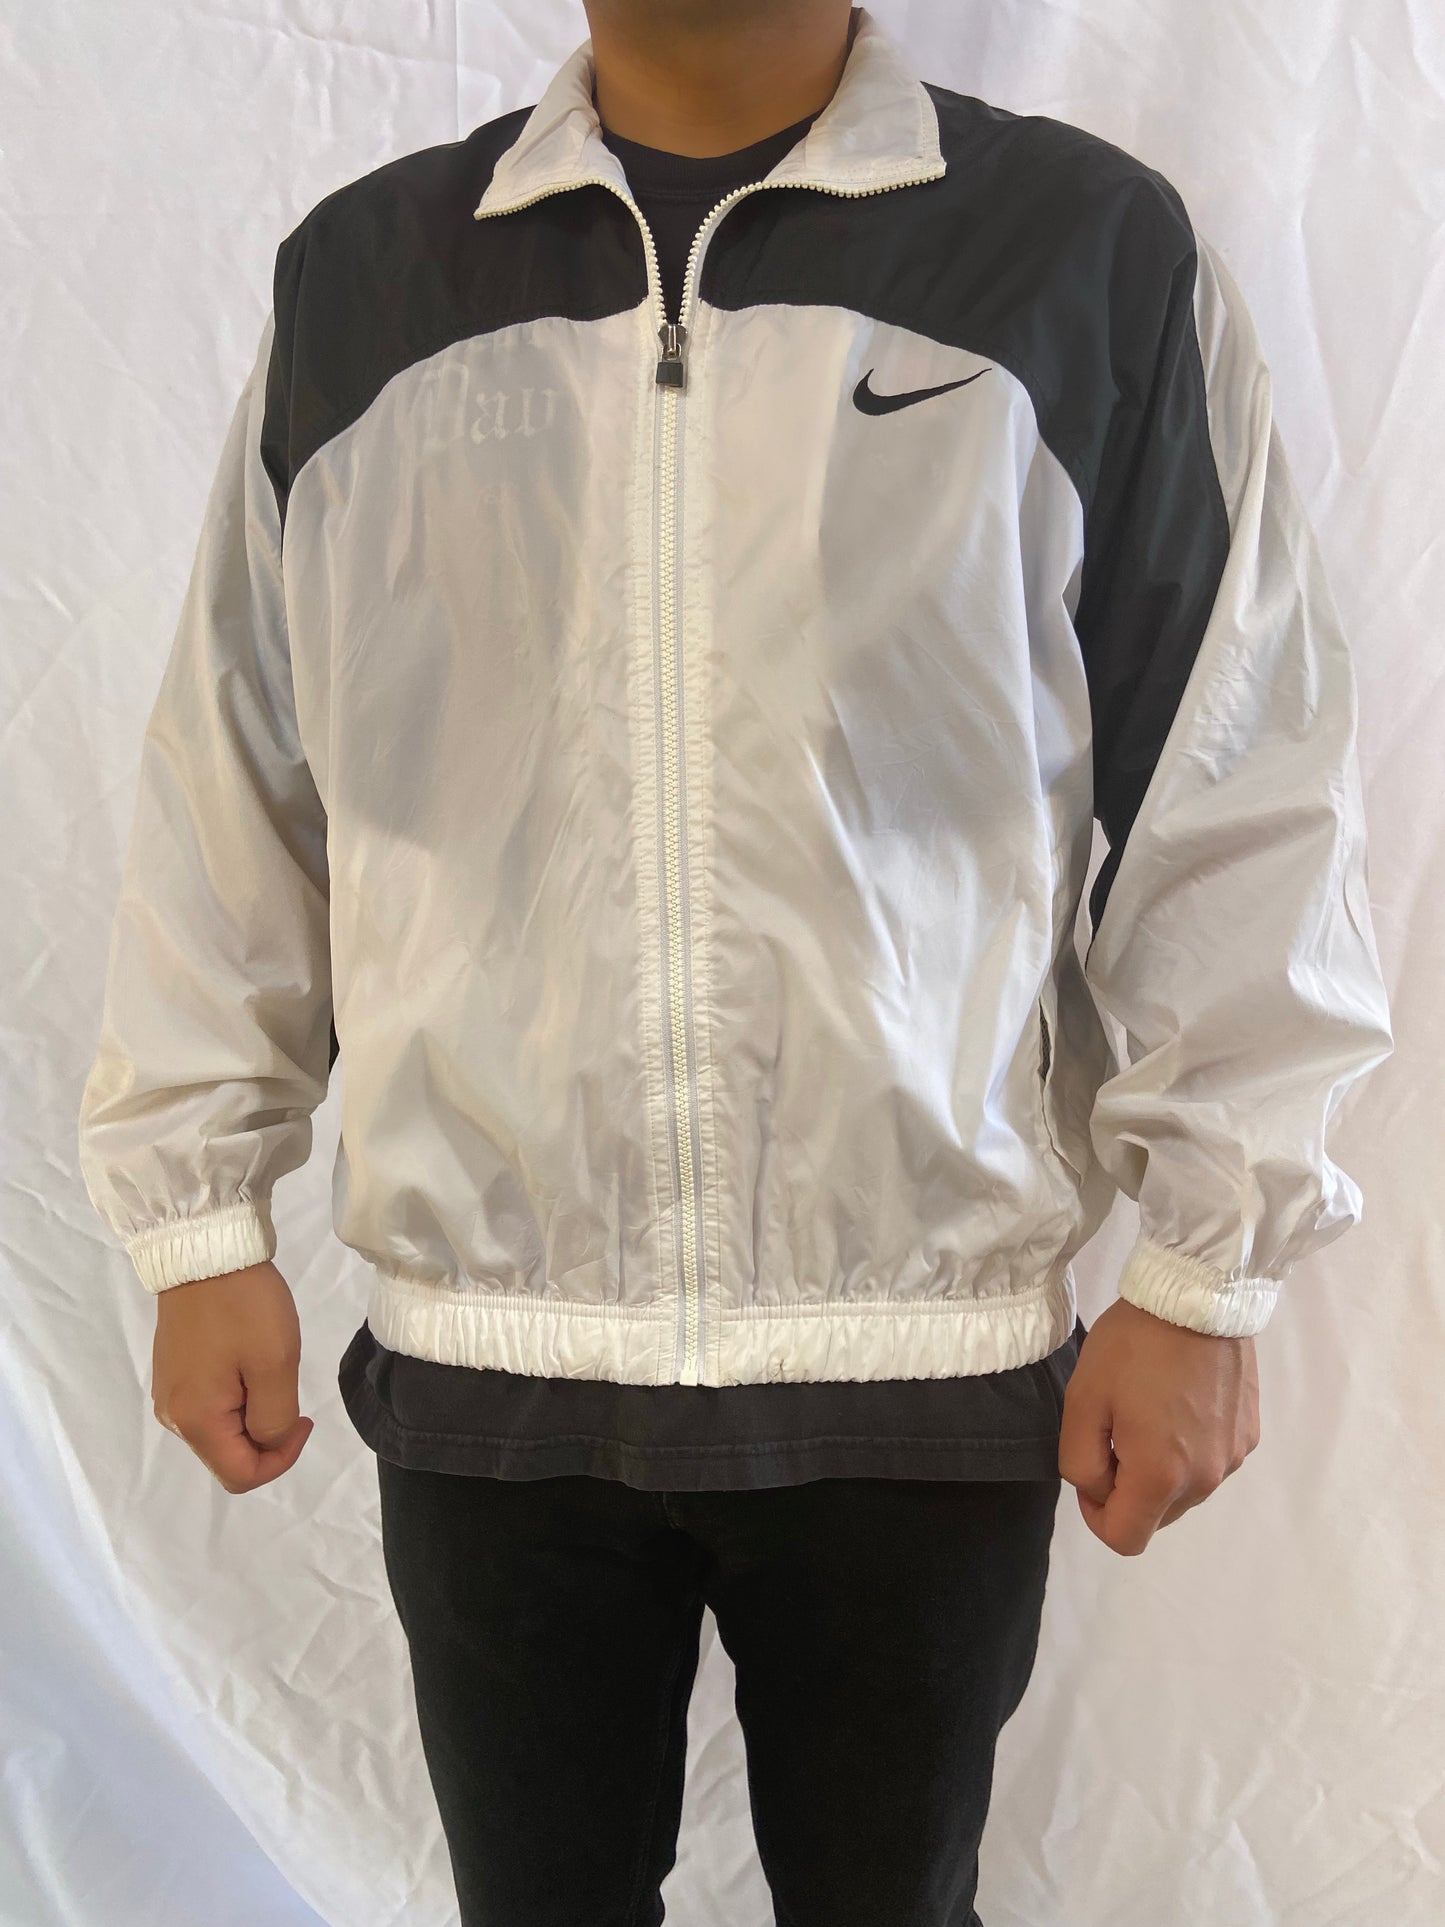 Nike Zip Up Nylon Jacket - Large